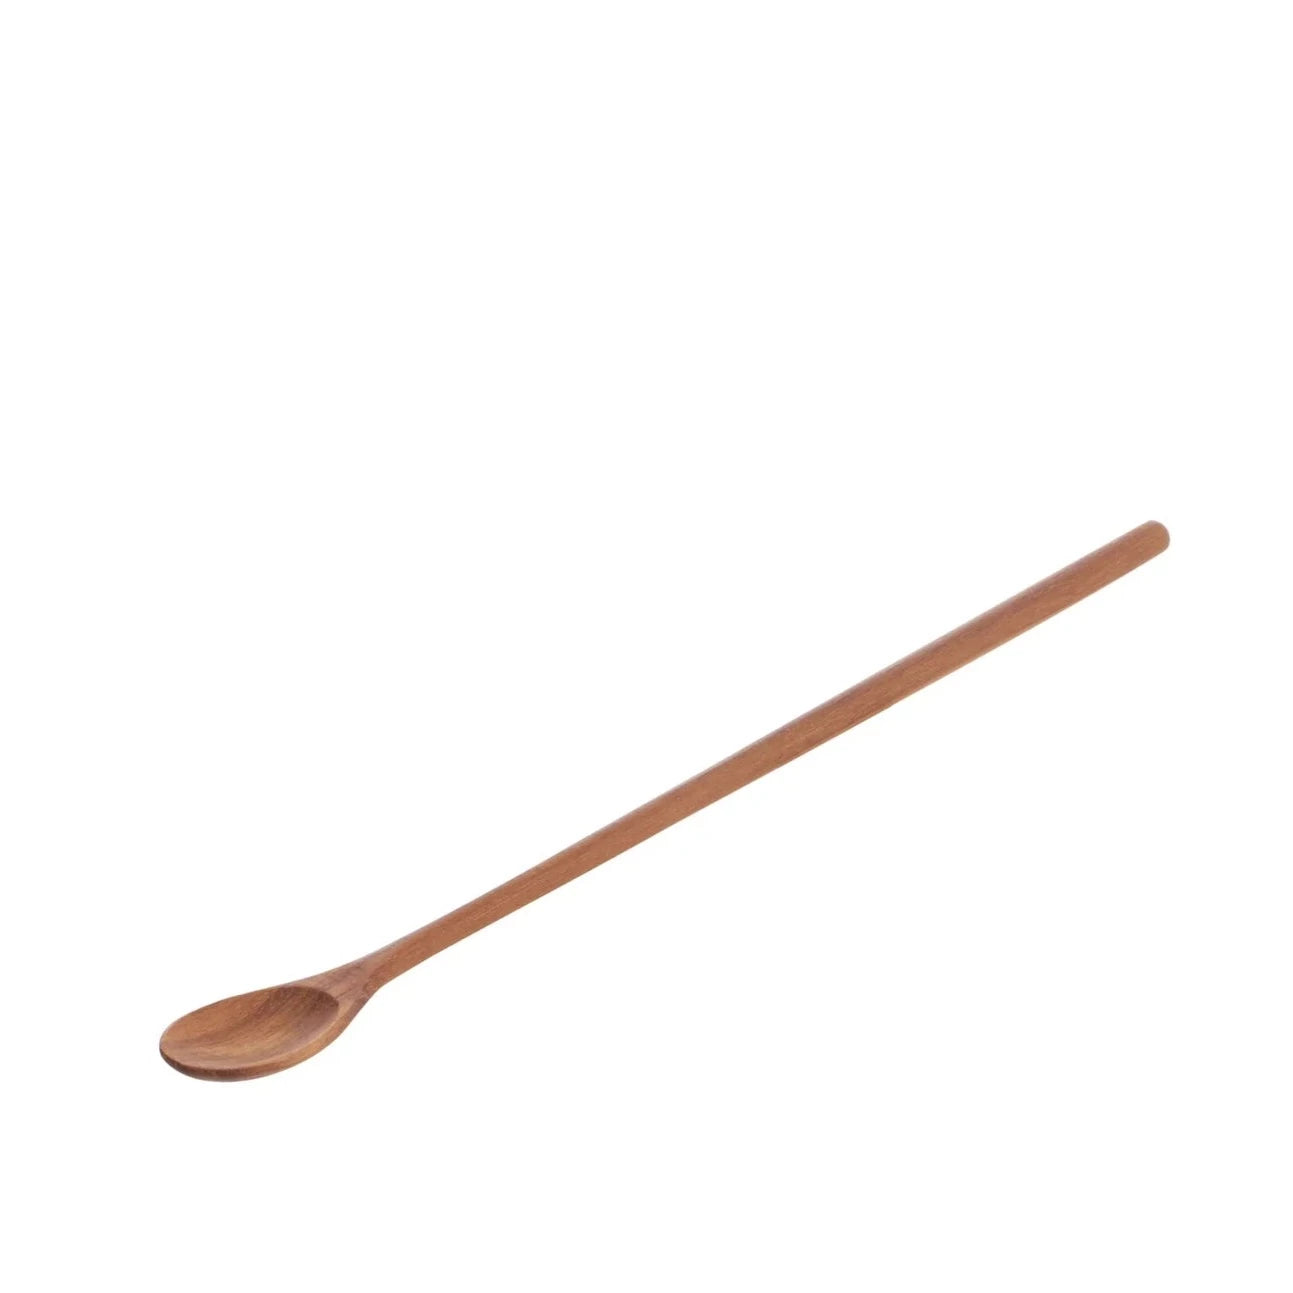 Chiku Long Spoon